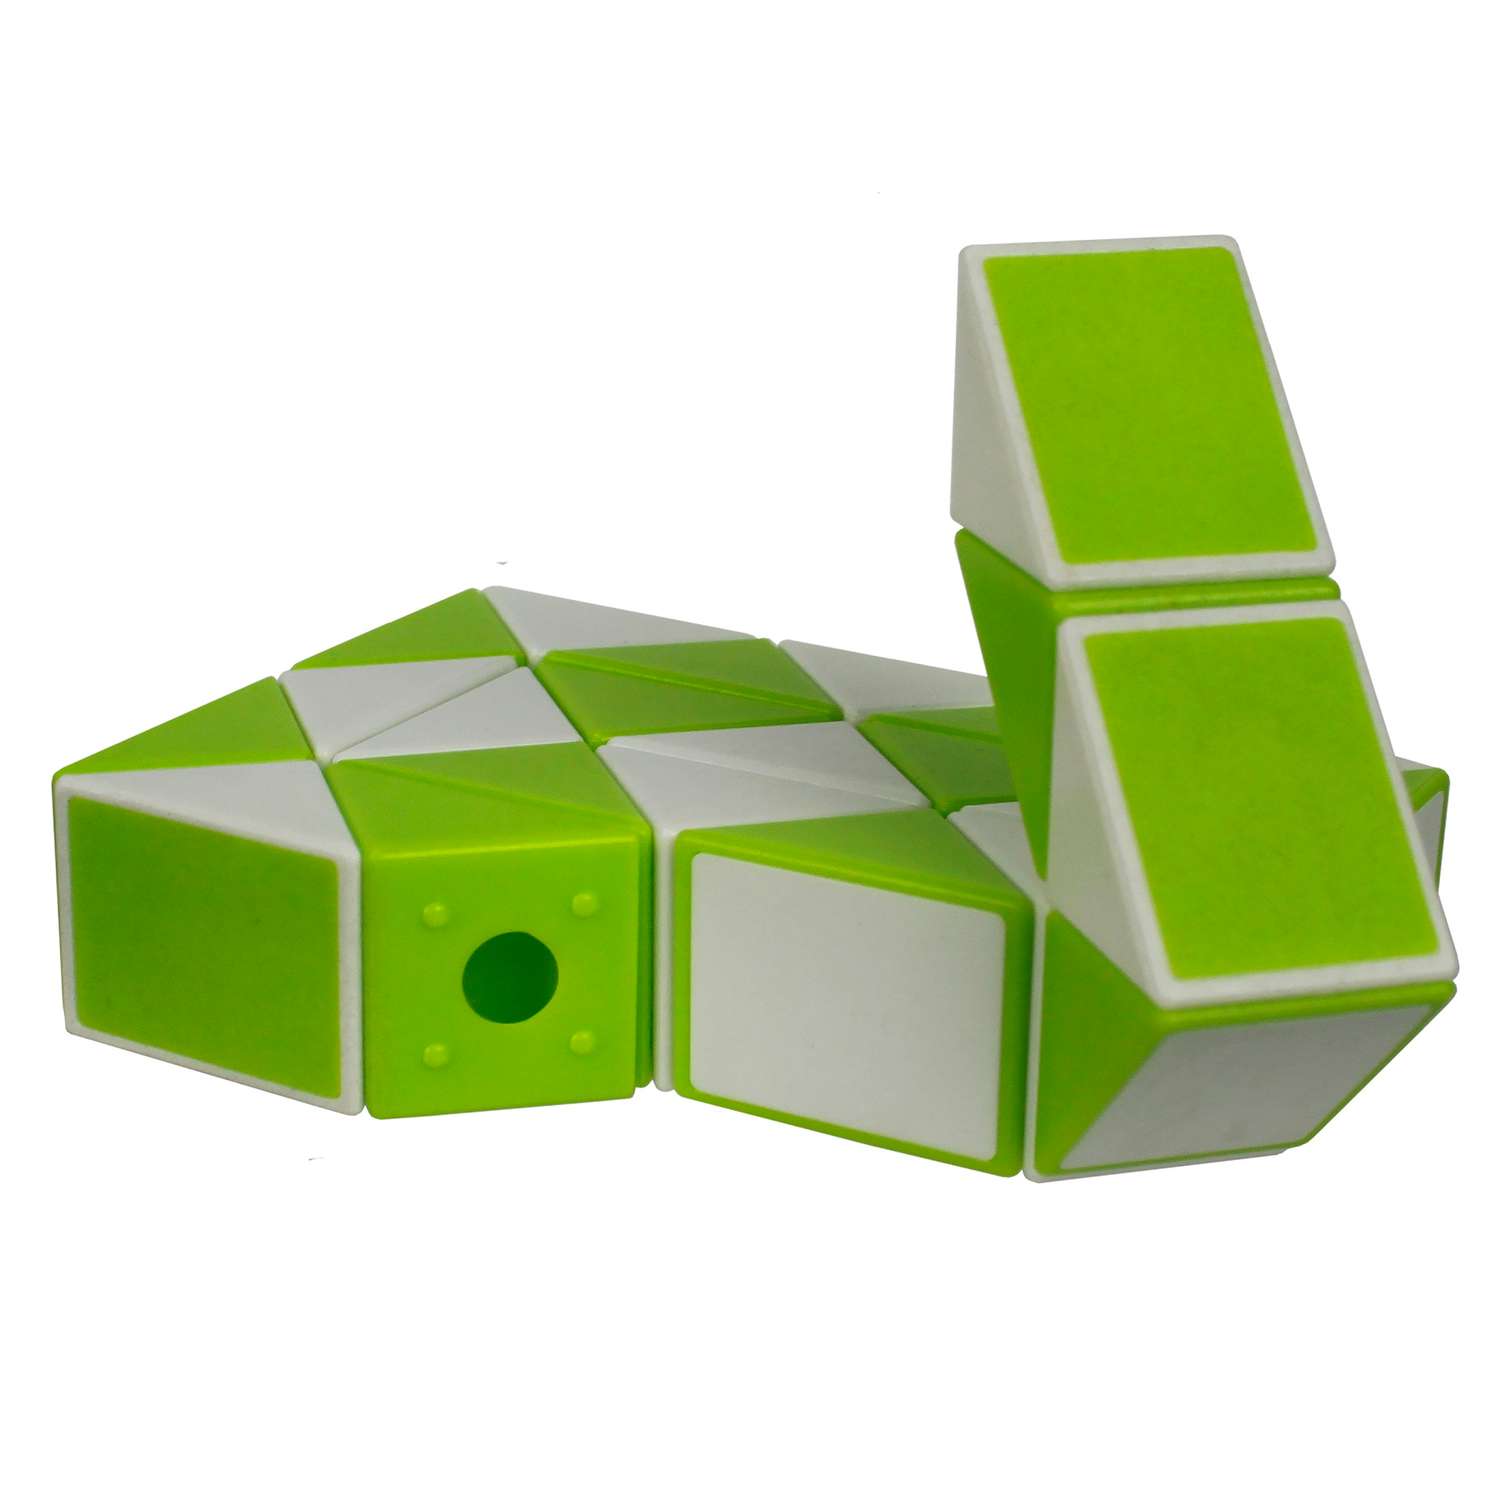 Игрушка 1 TOY головоломка Змейка малая 24 сегмента зеленая - фото 1